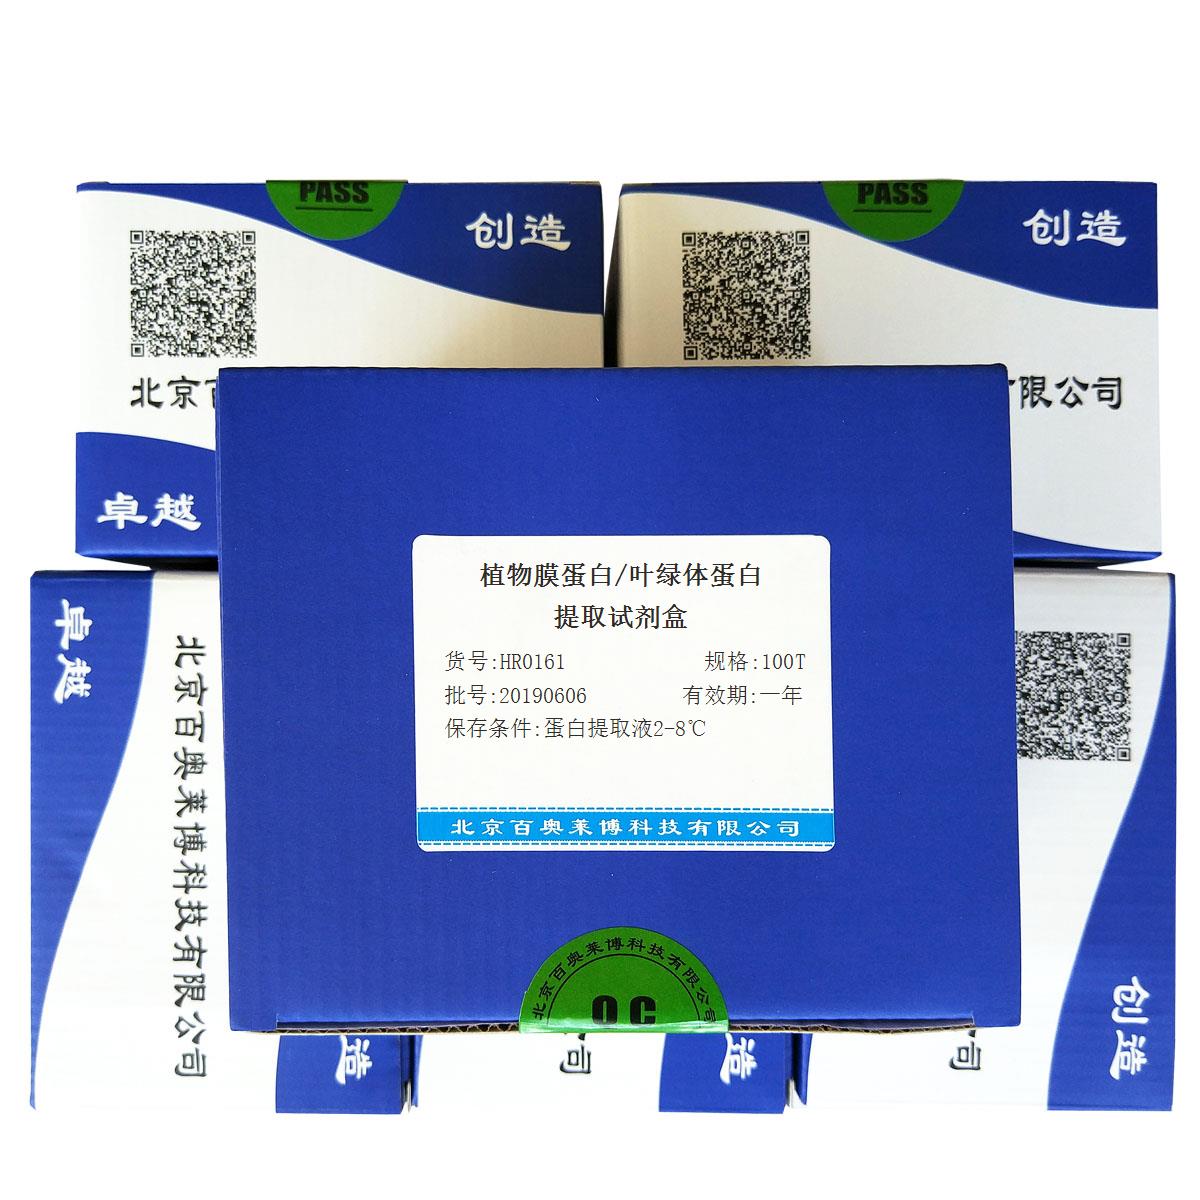 植物膜蛋白/叶绿体蛋白提取试剂盒北京厂家